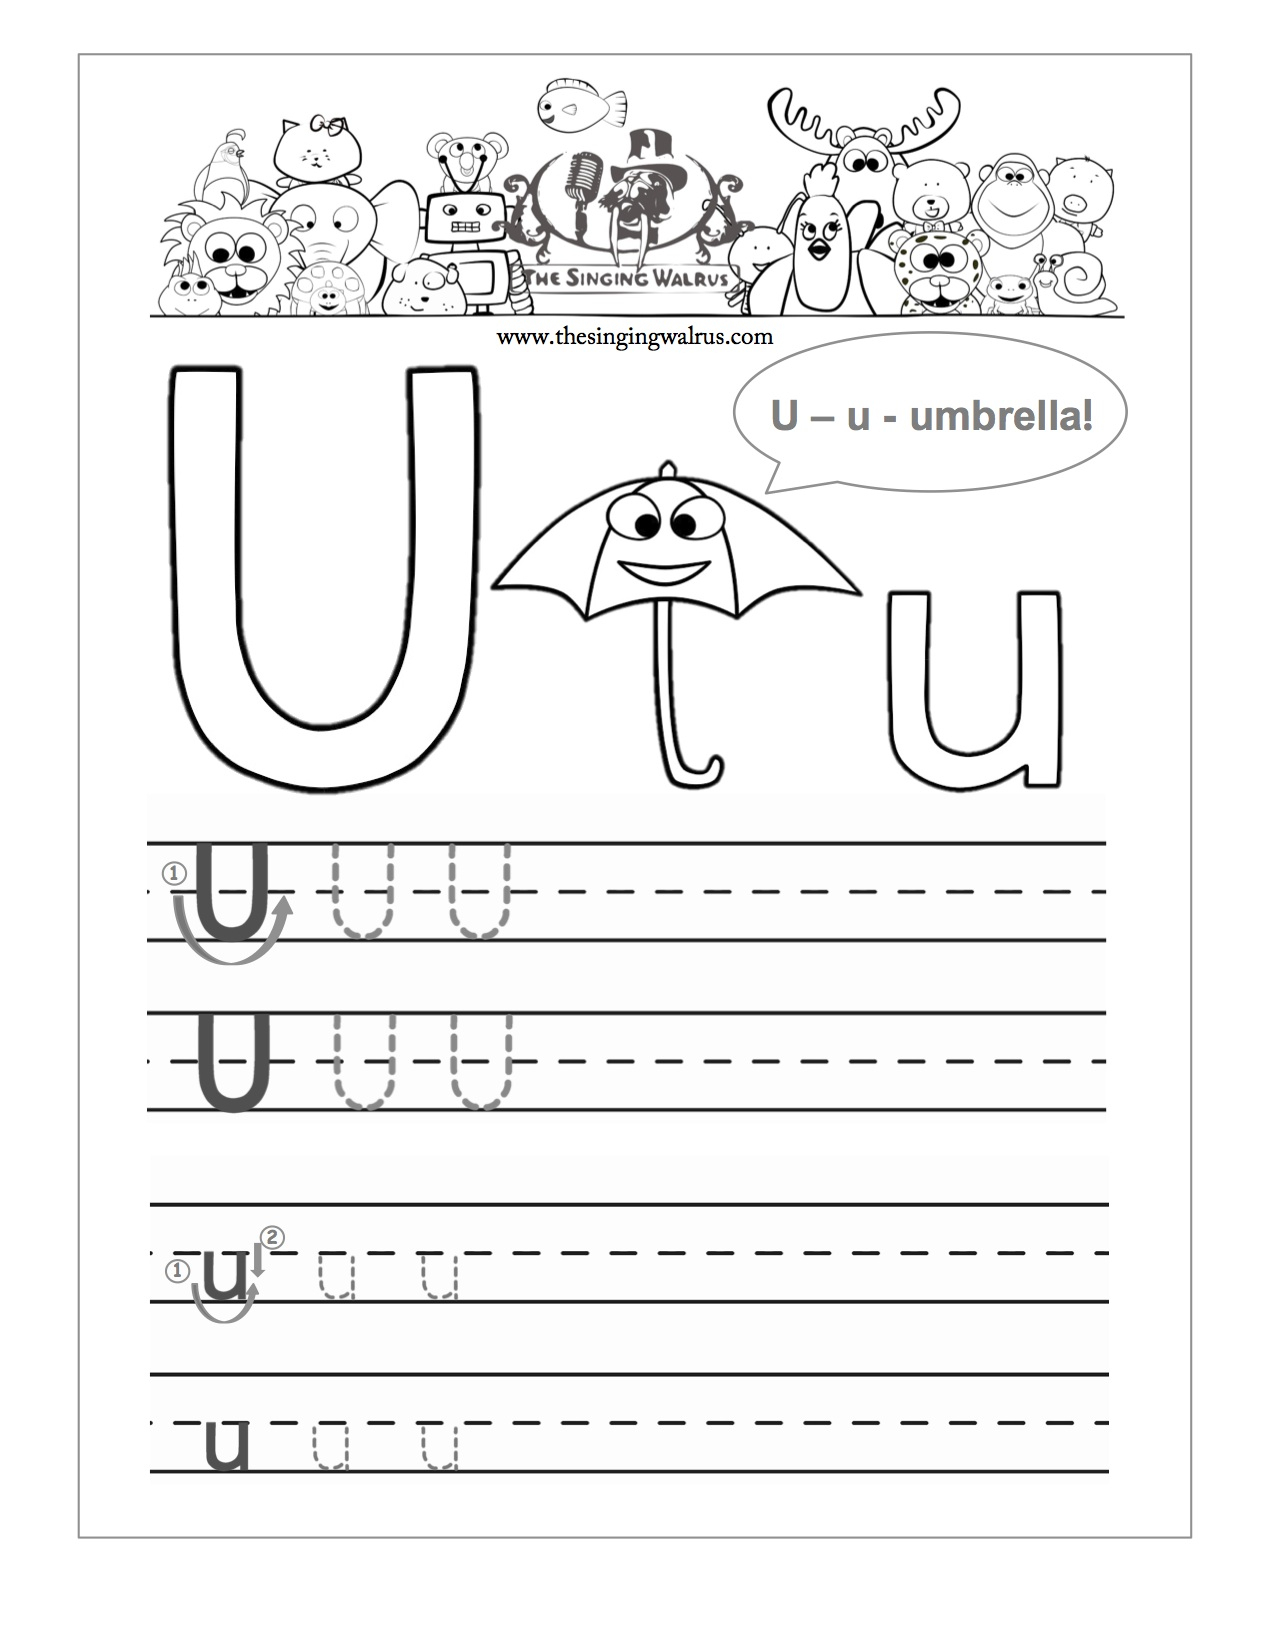 Letter U Worksheets. Common Worksheets Letter U Worksheet throughout Letter U Worksheets Handwriting Kindergarten